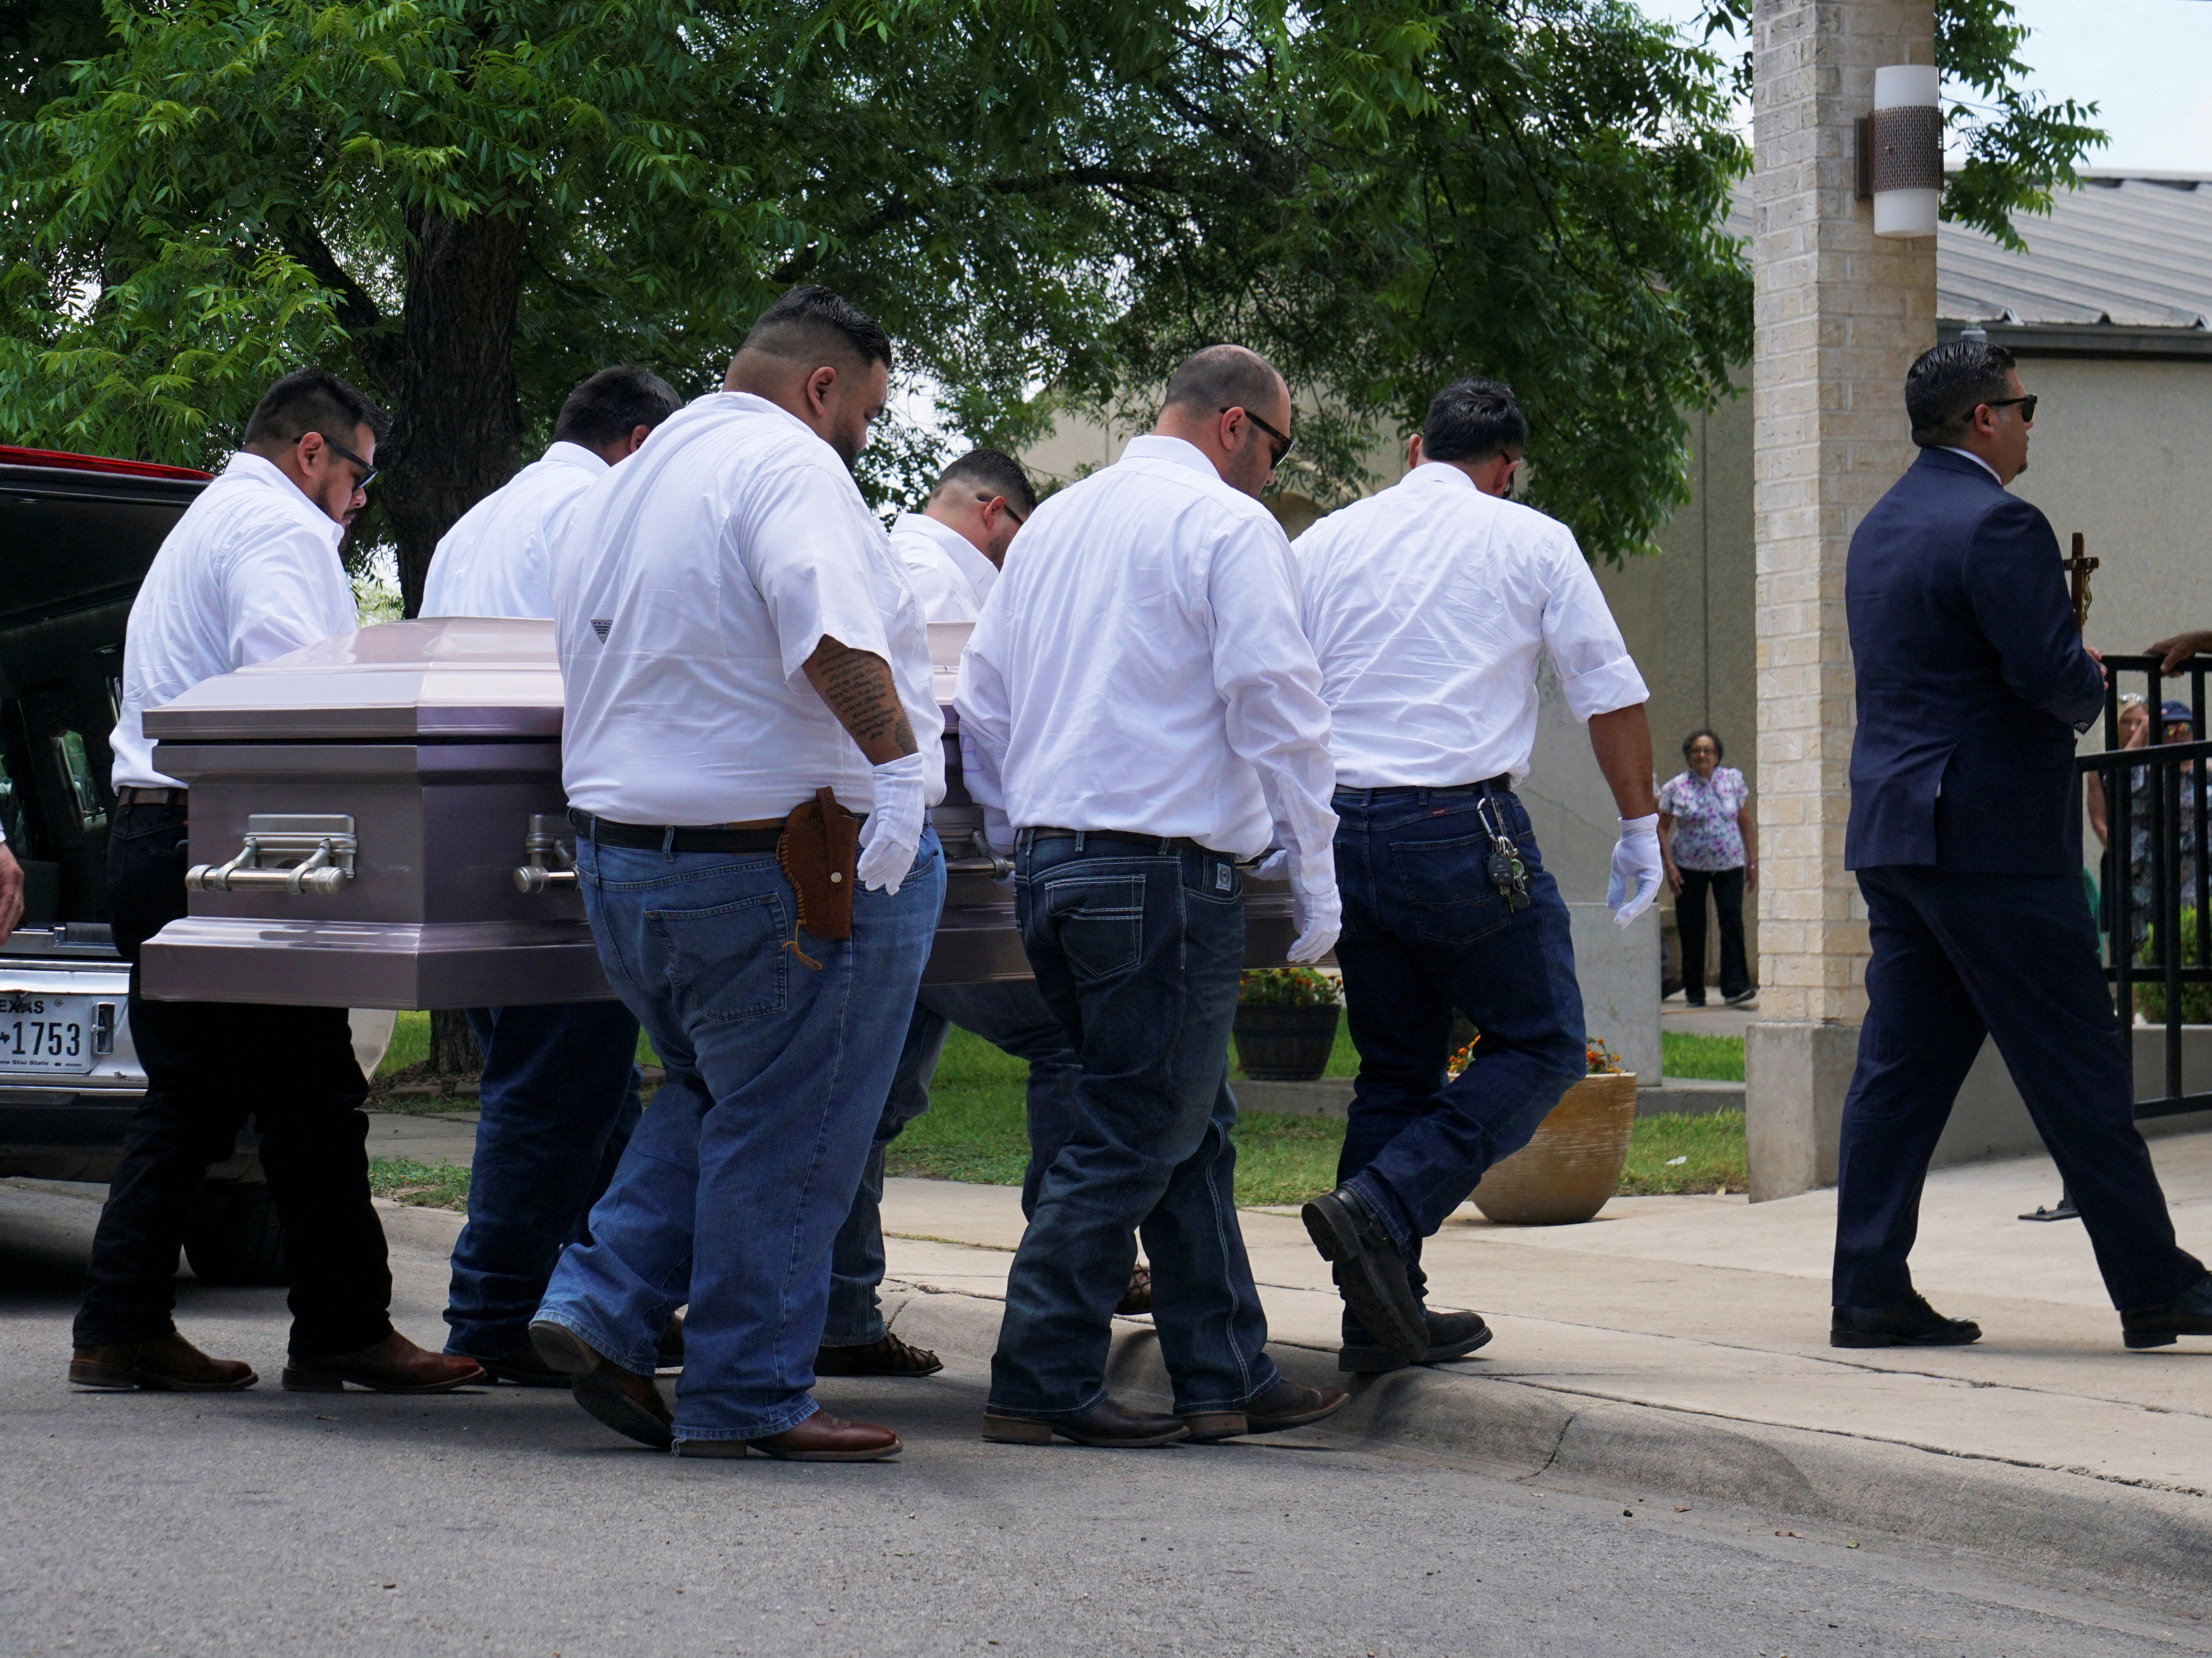 Pallbearers carry the coffin of Amerie Jo Garza